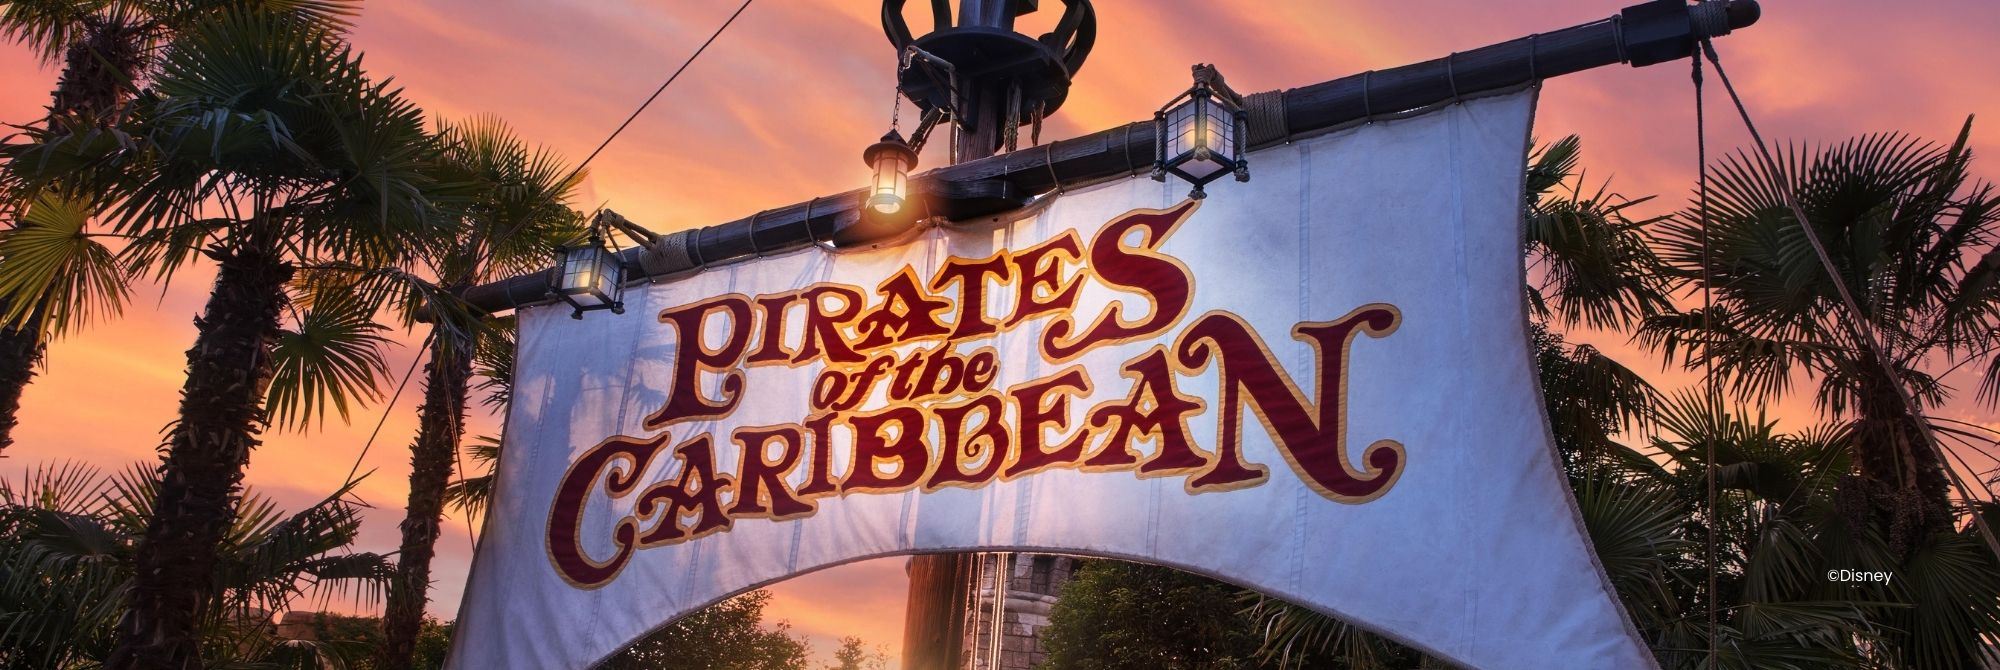 Zeil van een pirateschip bij de ingang van de attractie Pirates of the Caribbean